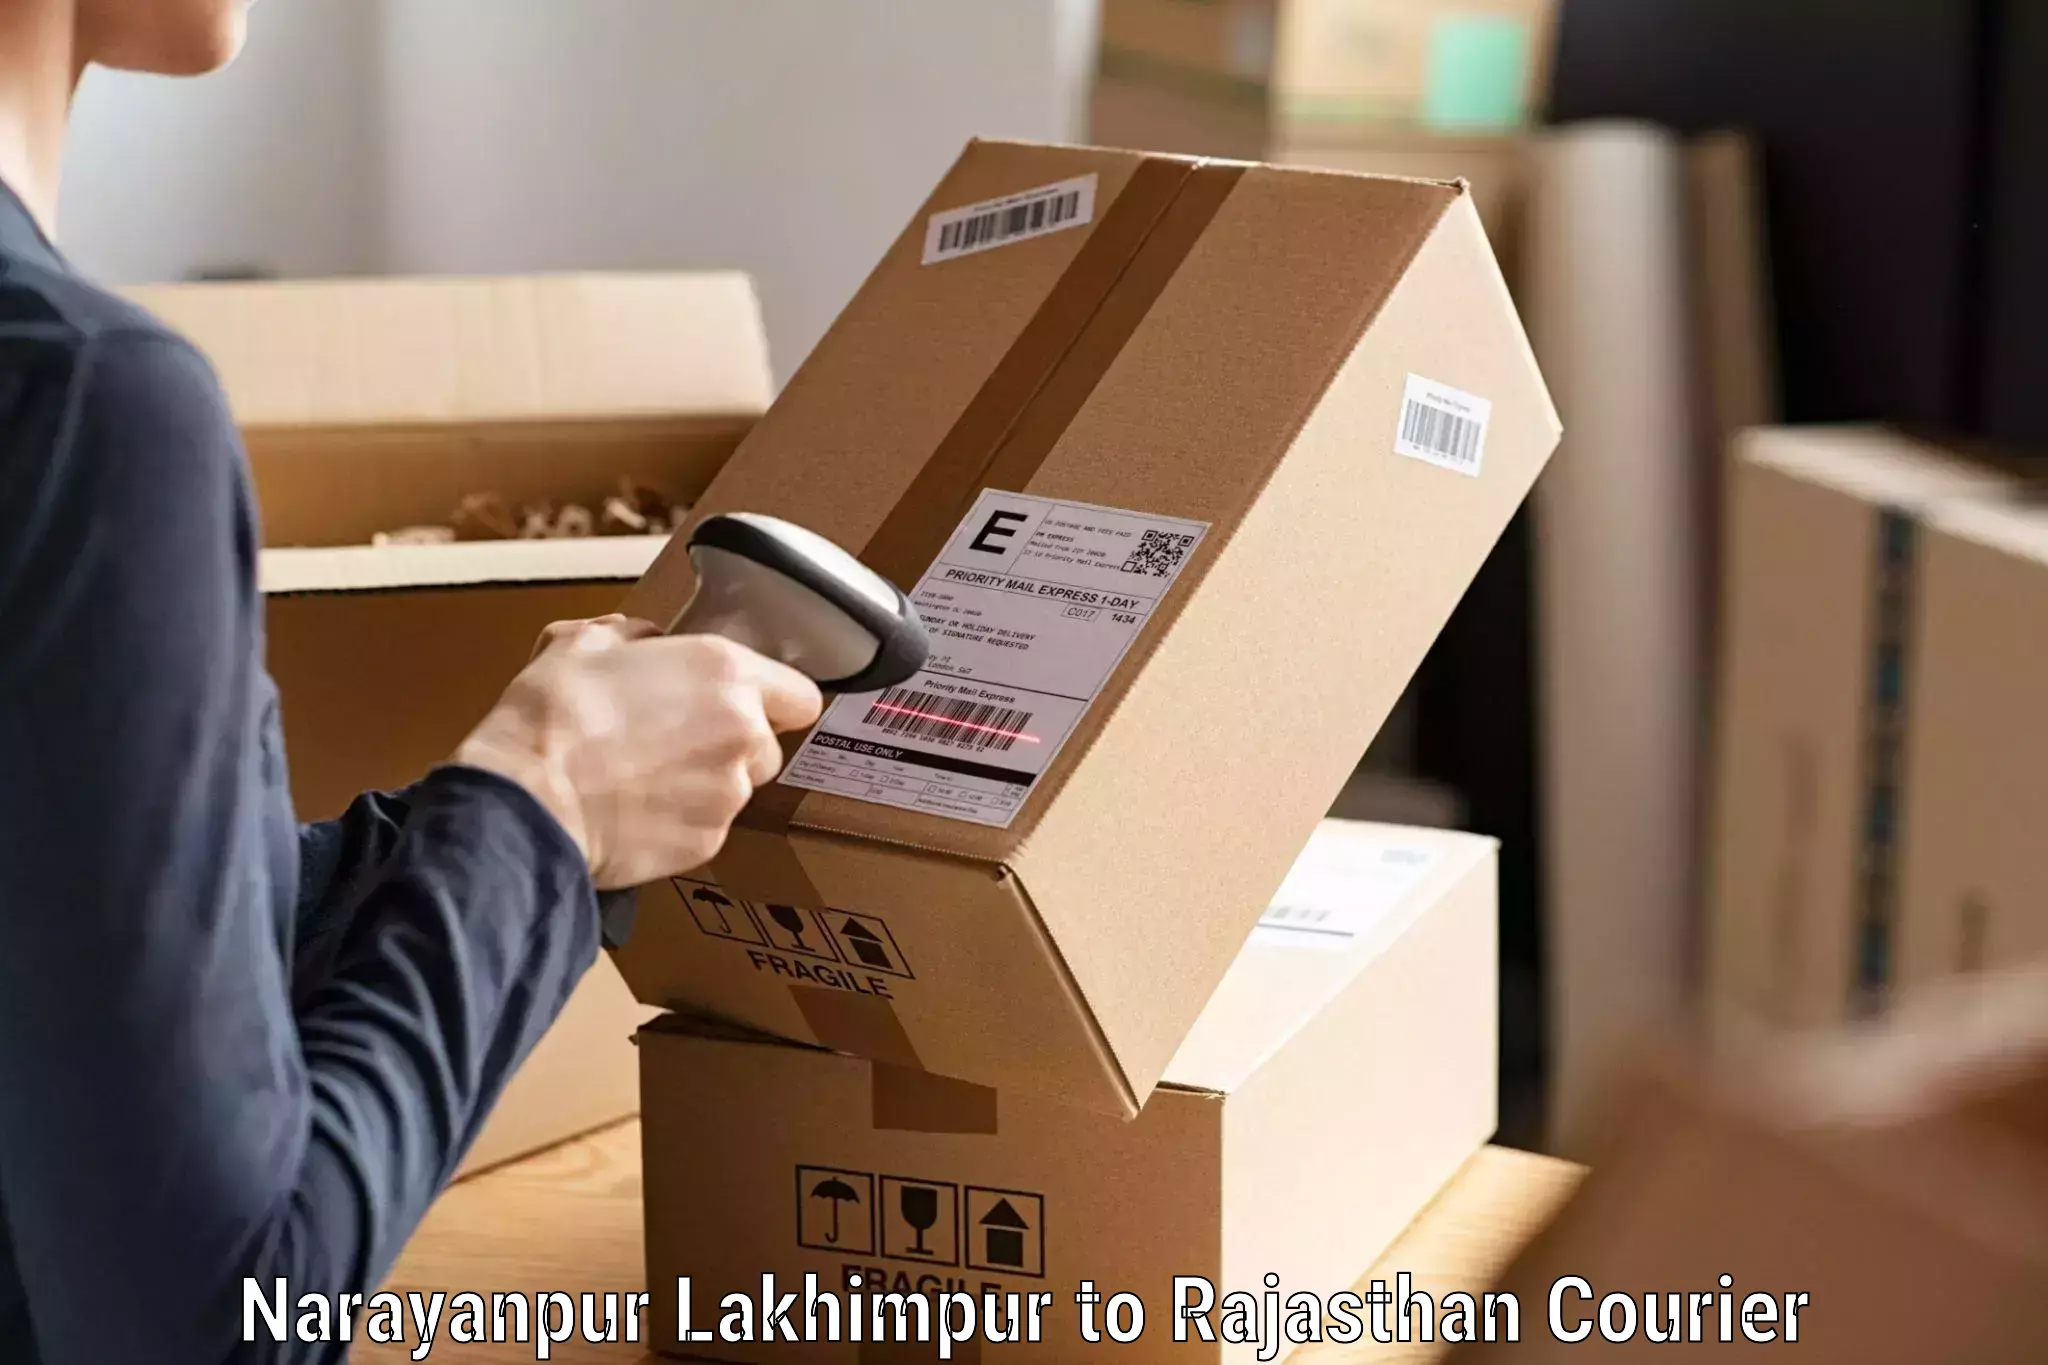 Tech-enabled shipping in Narayanpur Lakhimpur to Yathalakunta